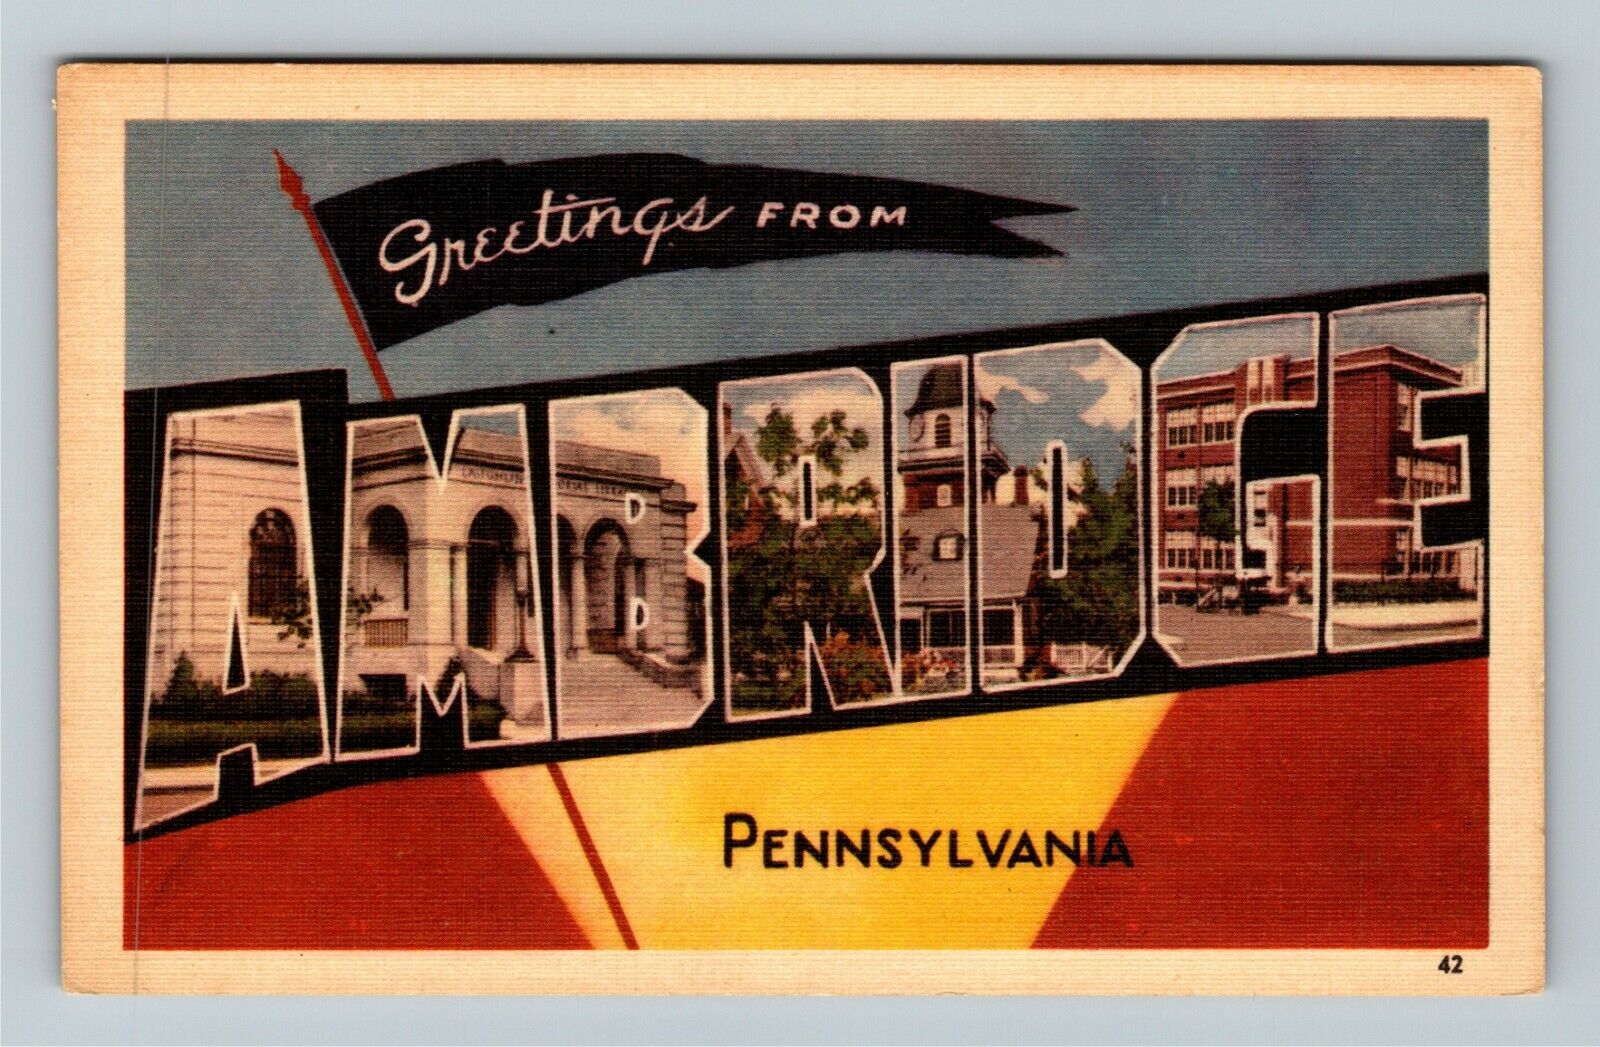 Ambridge PA-Pennsylvania, LARGE LETTTER Greetings, Vintage Postcard